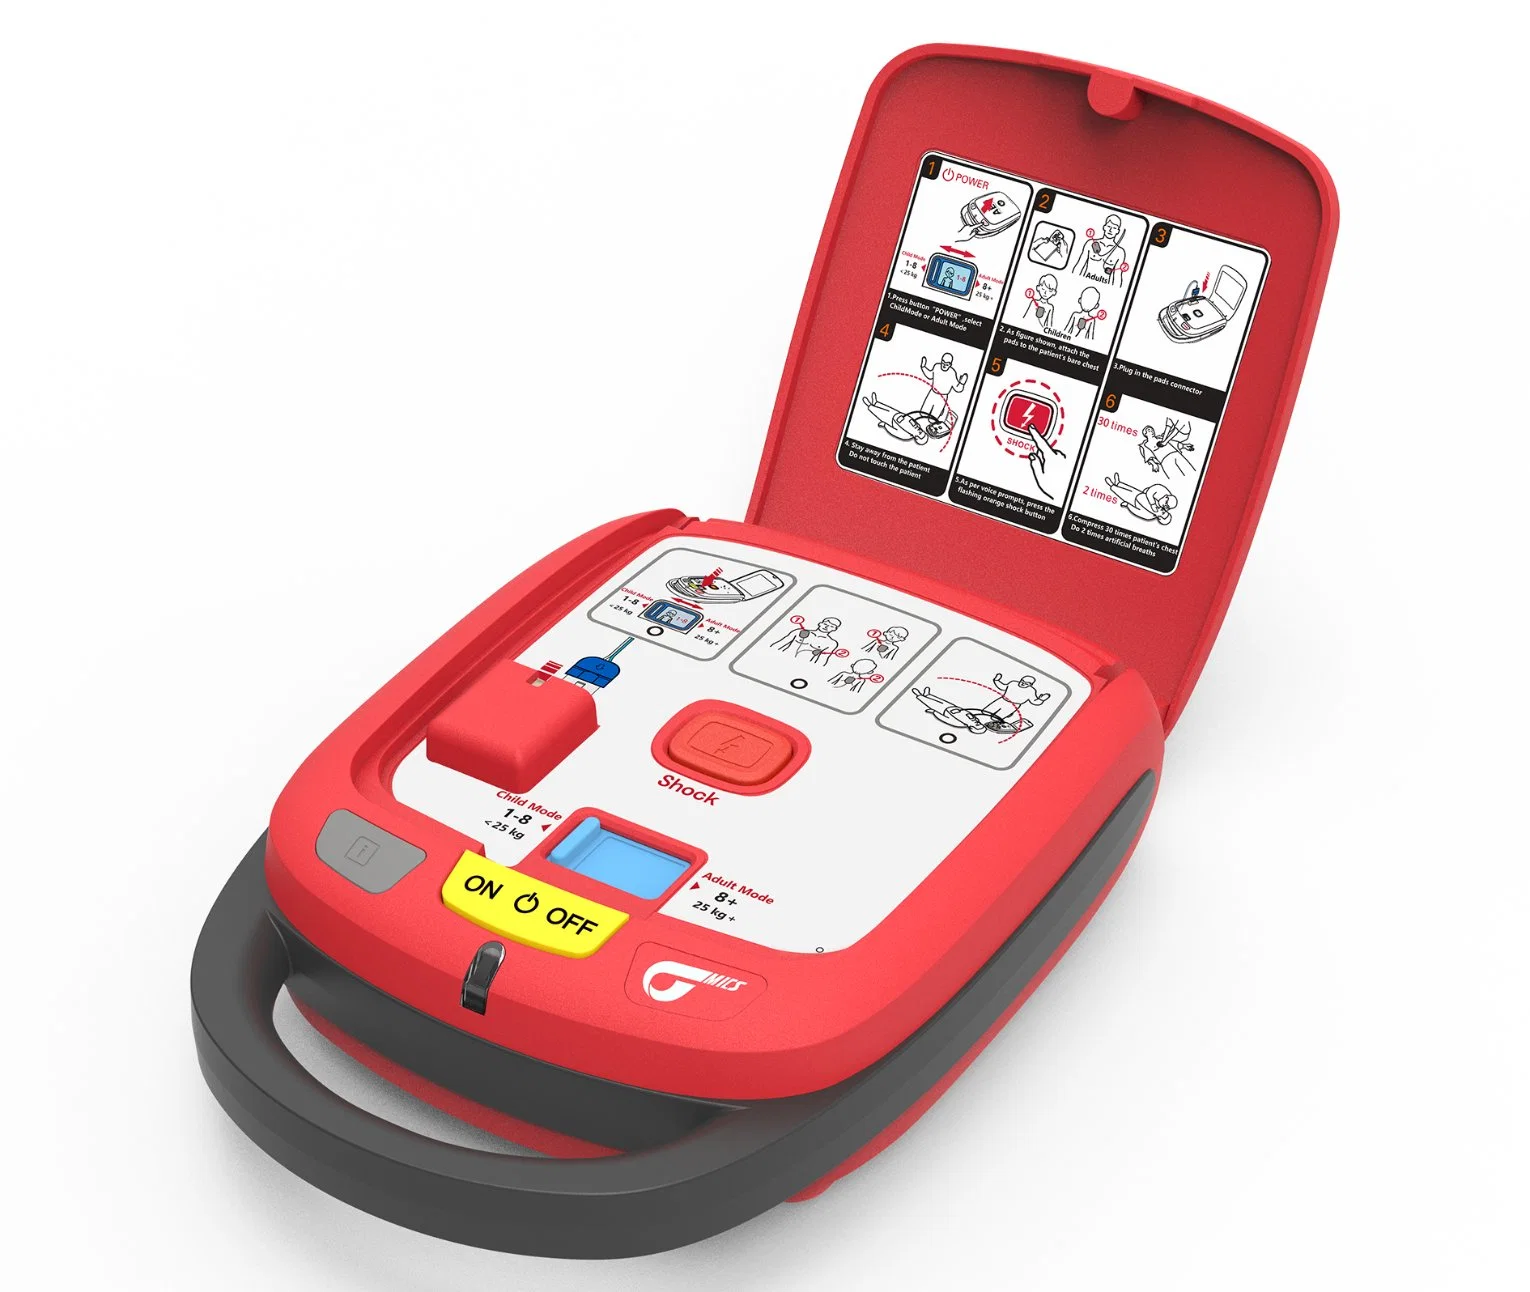 جهاز صدمات القلب الكهربائية الخارجي الآلي (AED) مع لاصقات متوافقة مع البالغين/الأطفال منخفضة الطاقة، Bluetooth